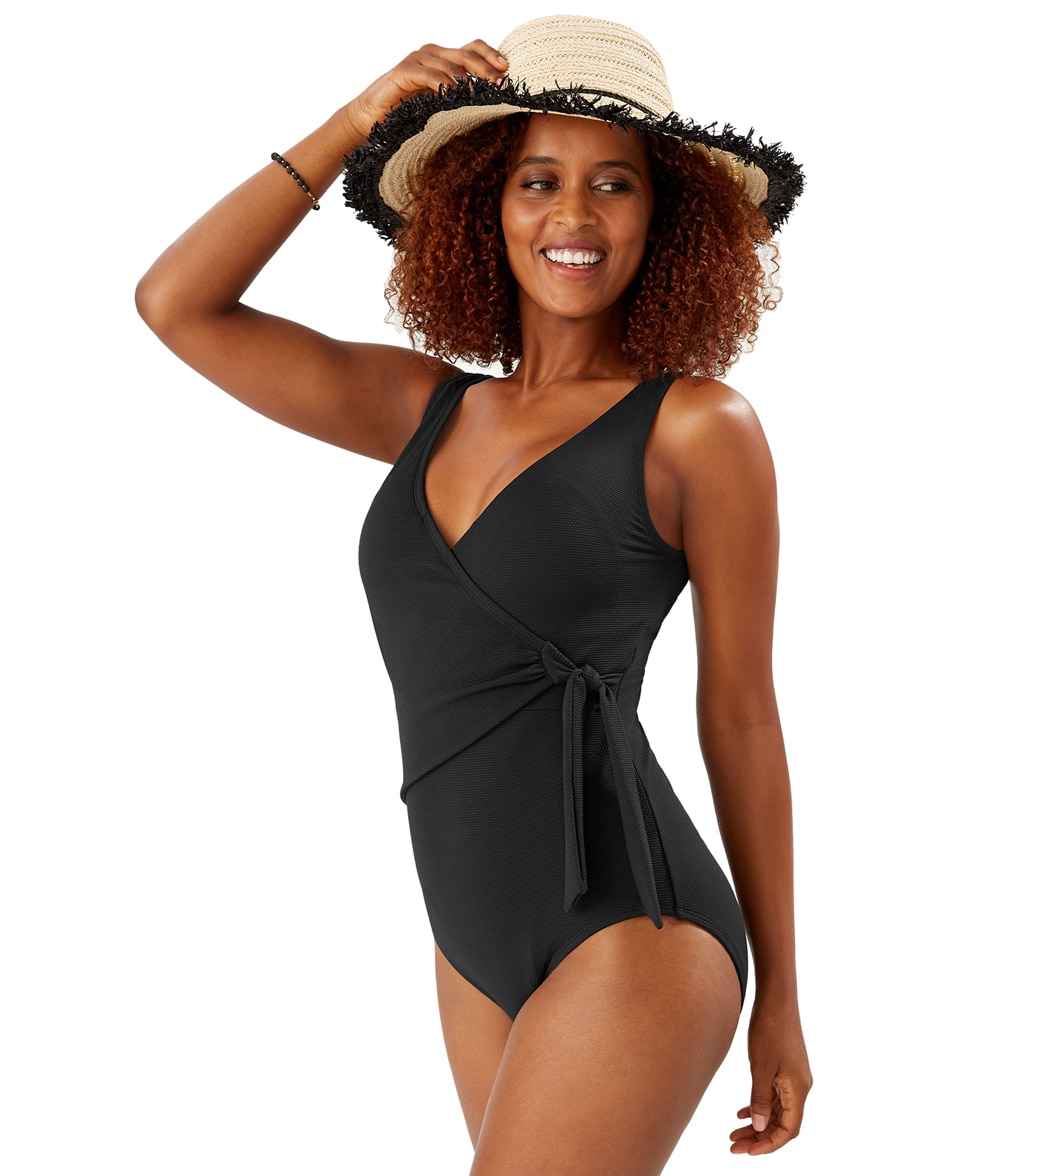 Tommy Bahama Women's Pique Colada Wrap One Piece Swimsuit - Black 12 - Swimoutlet.com